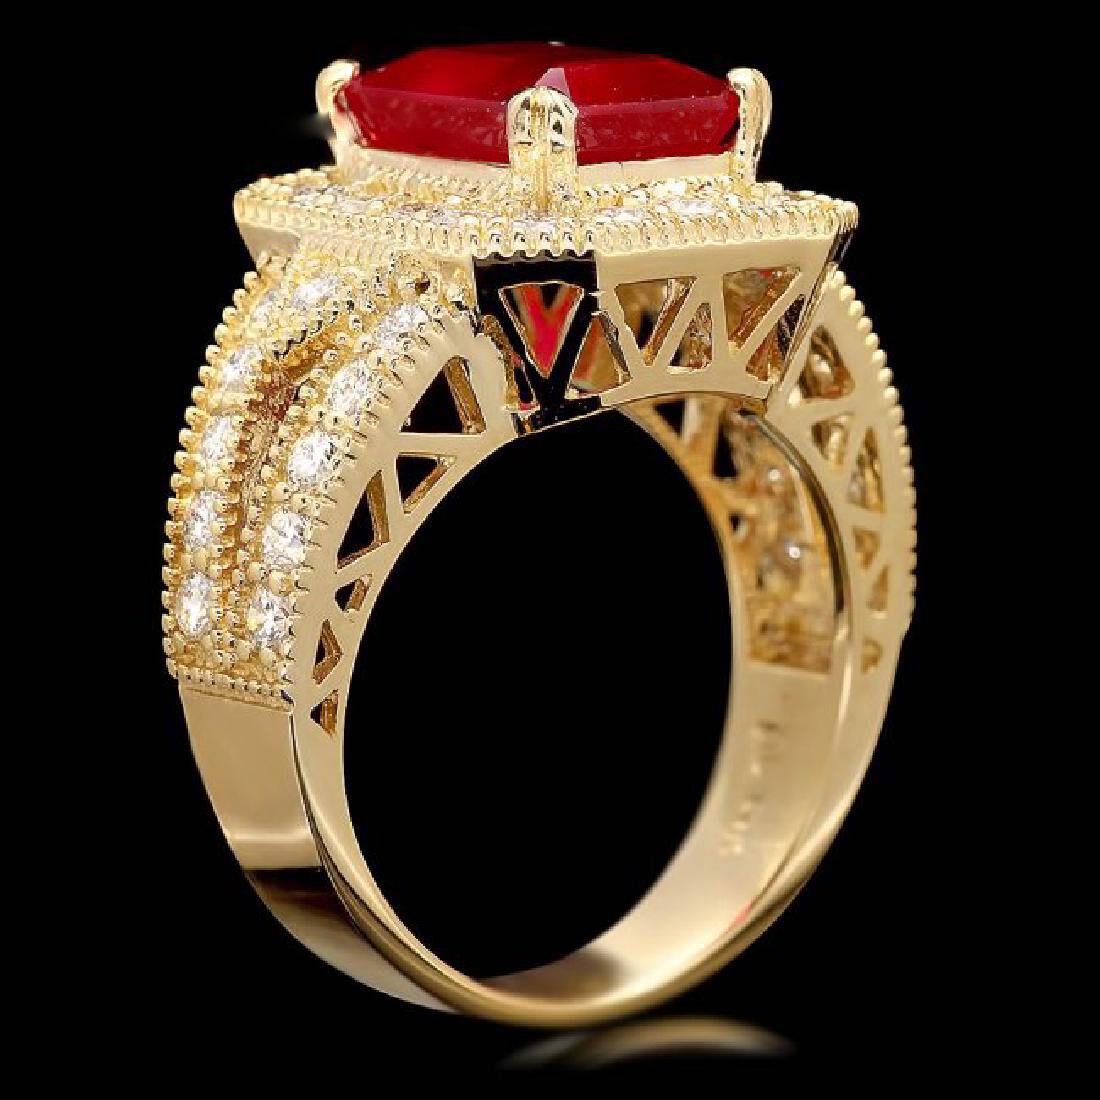 7,40 Karat beeindruckender natürlicher roter Rubin und Diamant 14K Gelbgold Ring

empfohlener Ersetzenswert: $5,900.00

Gesamtgewicht des roten Rubins beträgt: 6,00 Karat 

Maße: 10,00 x 8,00 mm

Rubinbehandlung: Bleiglasfüllung

Natürliche